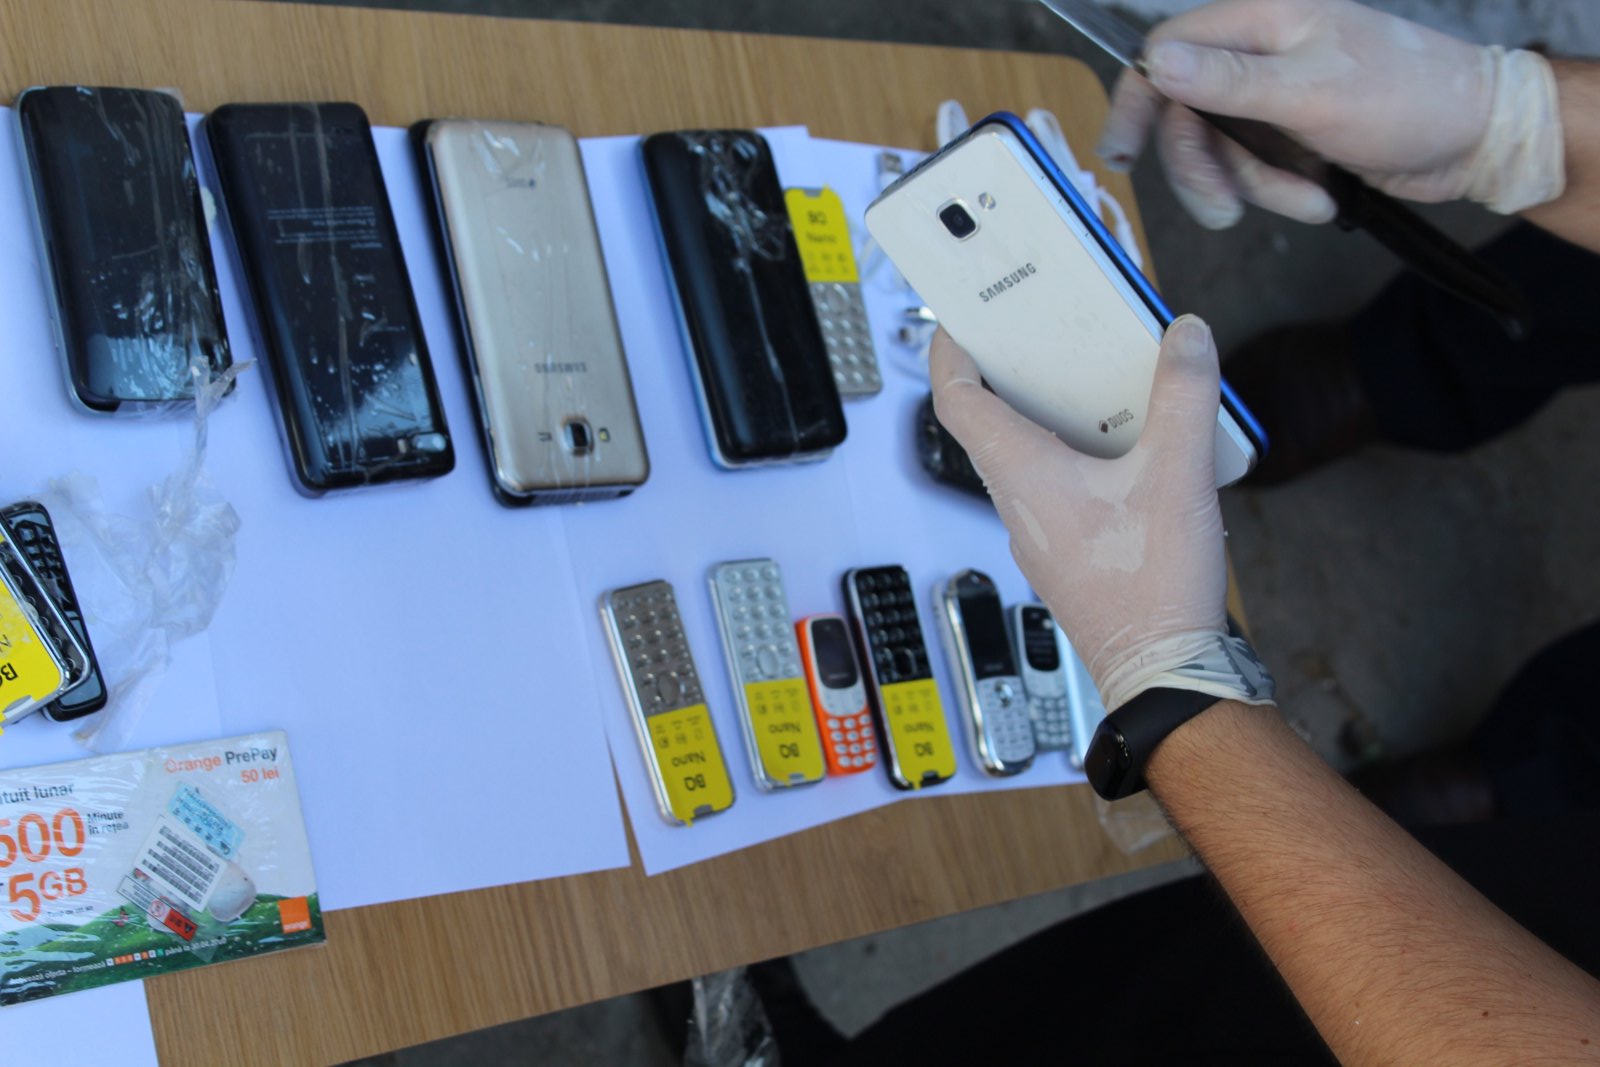 /FOTO/ Trafic de telefoane mobile deconspirat la Penitenciar din Bălți. Gadget-urile erau ascunse în carcasa unui frigider